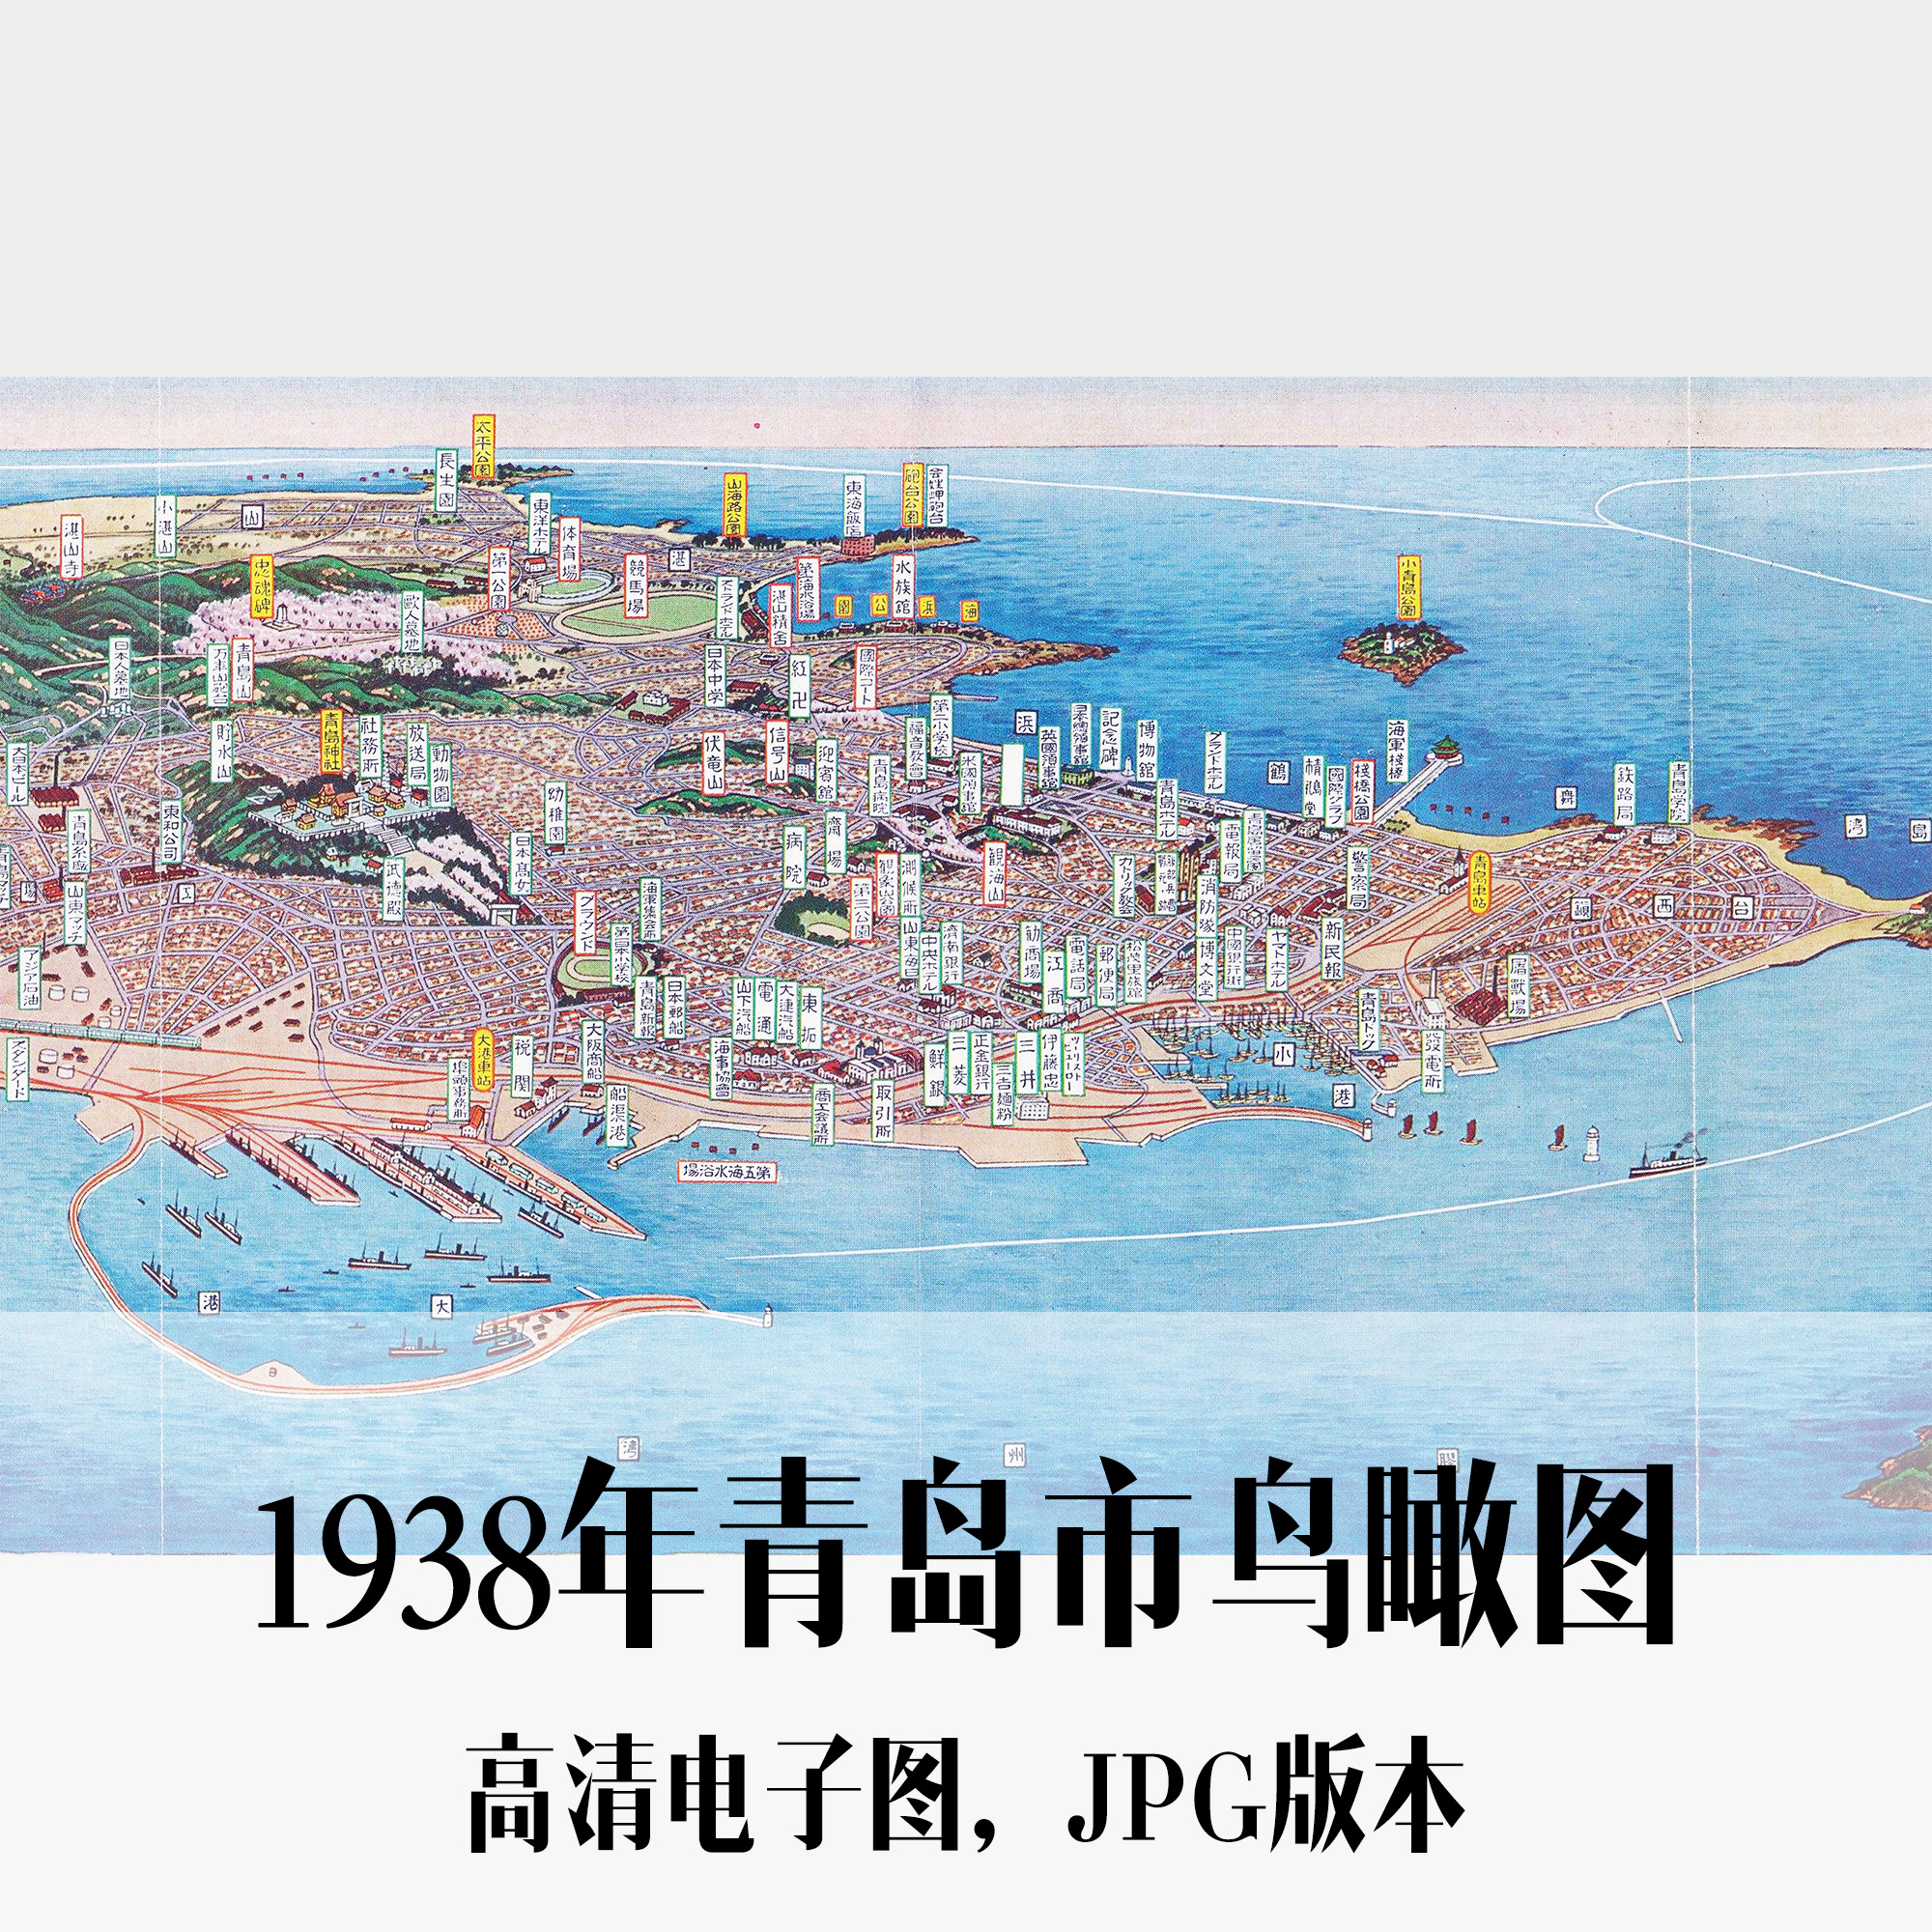 1938年青岛市鸟瞰图民国济南电子老地图历史地理资料素材